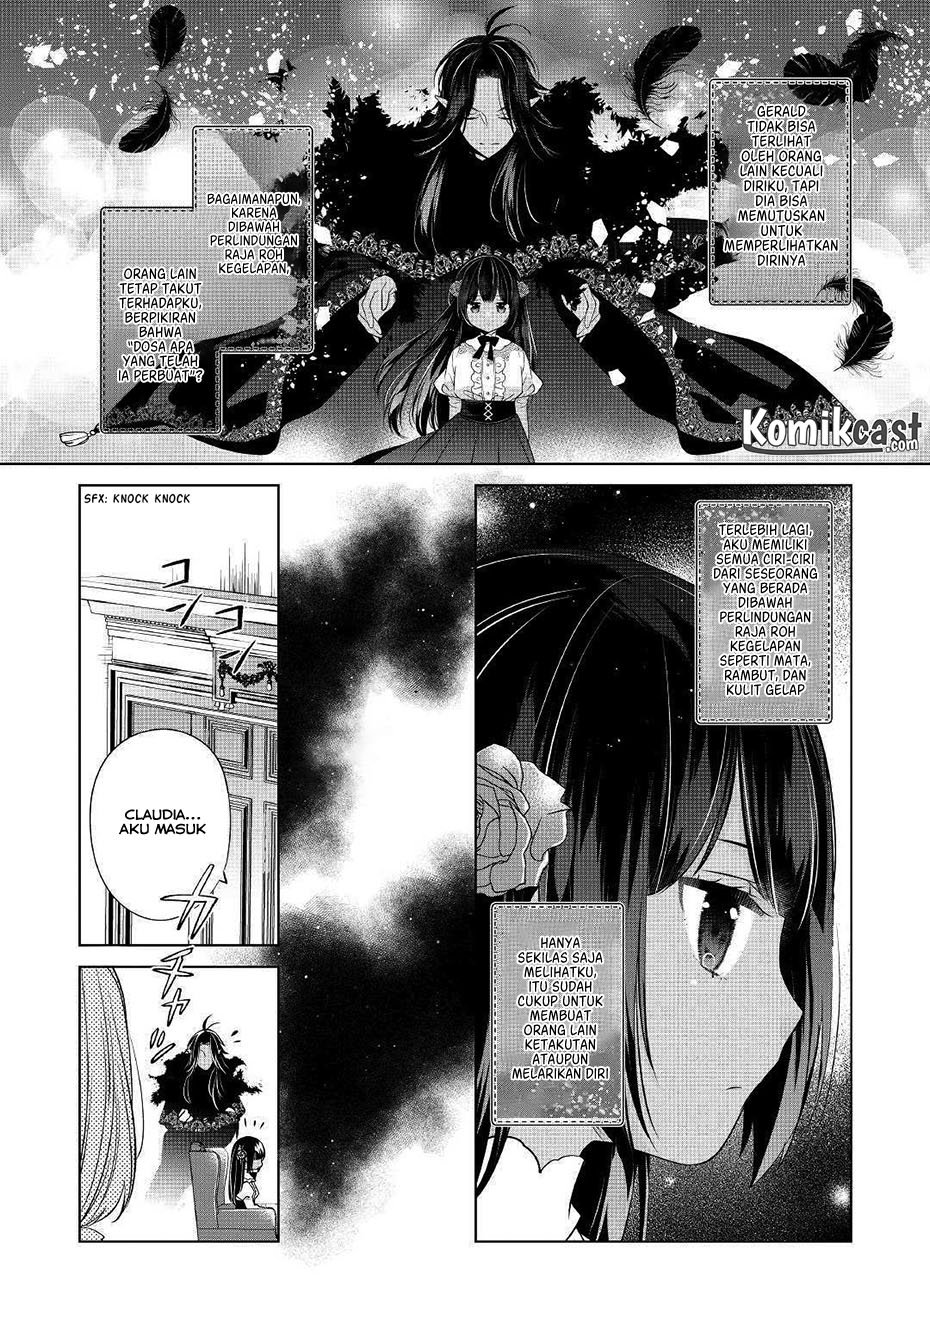 Baca Watashi wa Akuyaku Reijou Nanka Janai~! ! Yami Tsukaidakaratte Kanarazushimo Akuyakuda to Omou na yo! Chapter 1  - GudangKomik